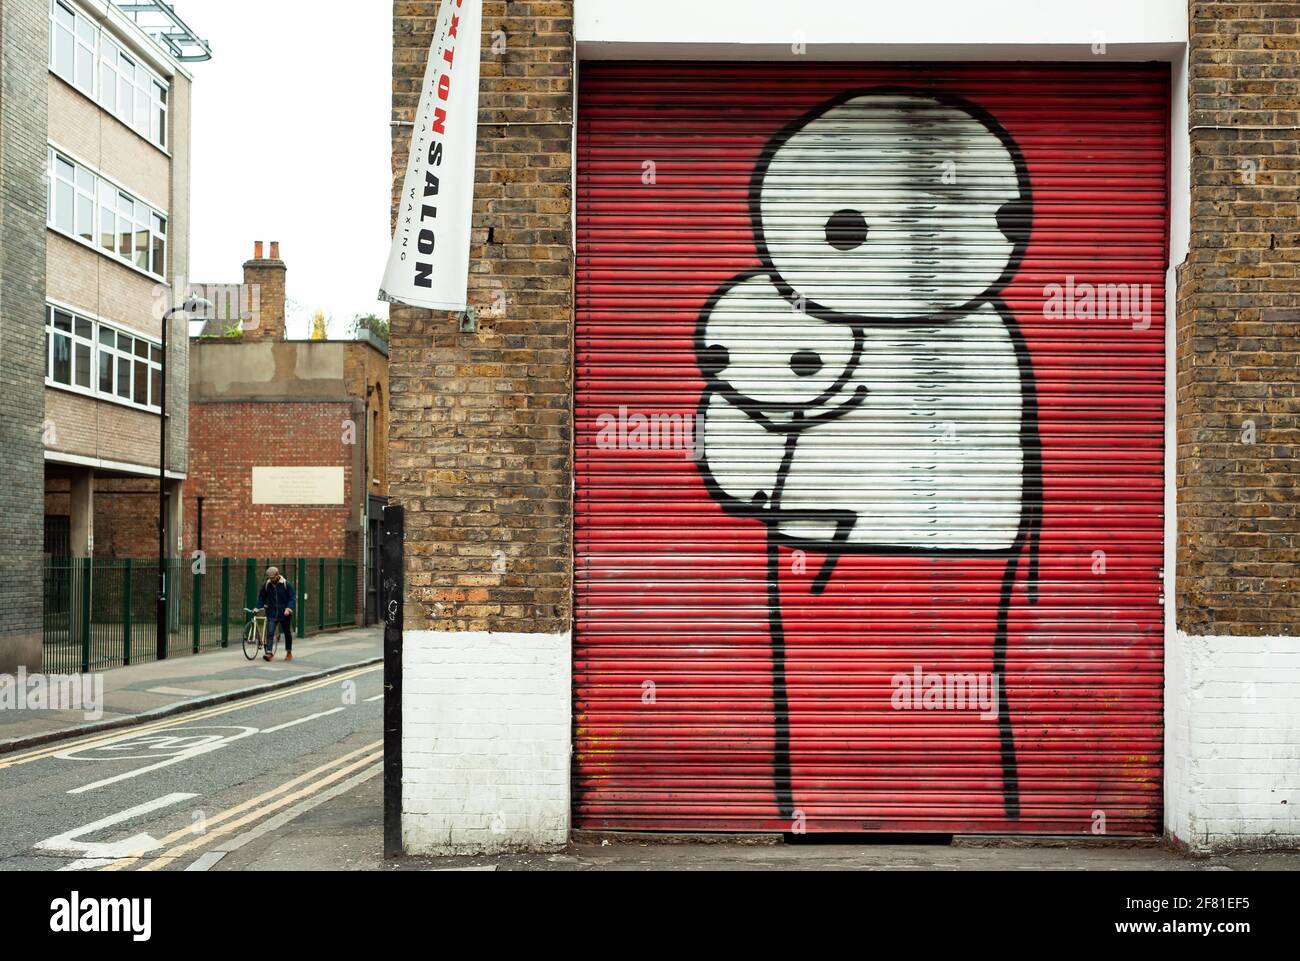 L'œuvre de Stik (artiste britannique de graffiti basé à Londres). Grands chiffres en bâton sur les volets peints. East London, Royaume-Uni. AVR 2013 Banque D'Images